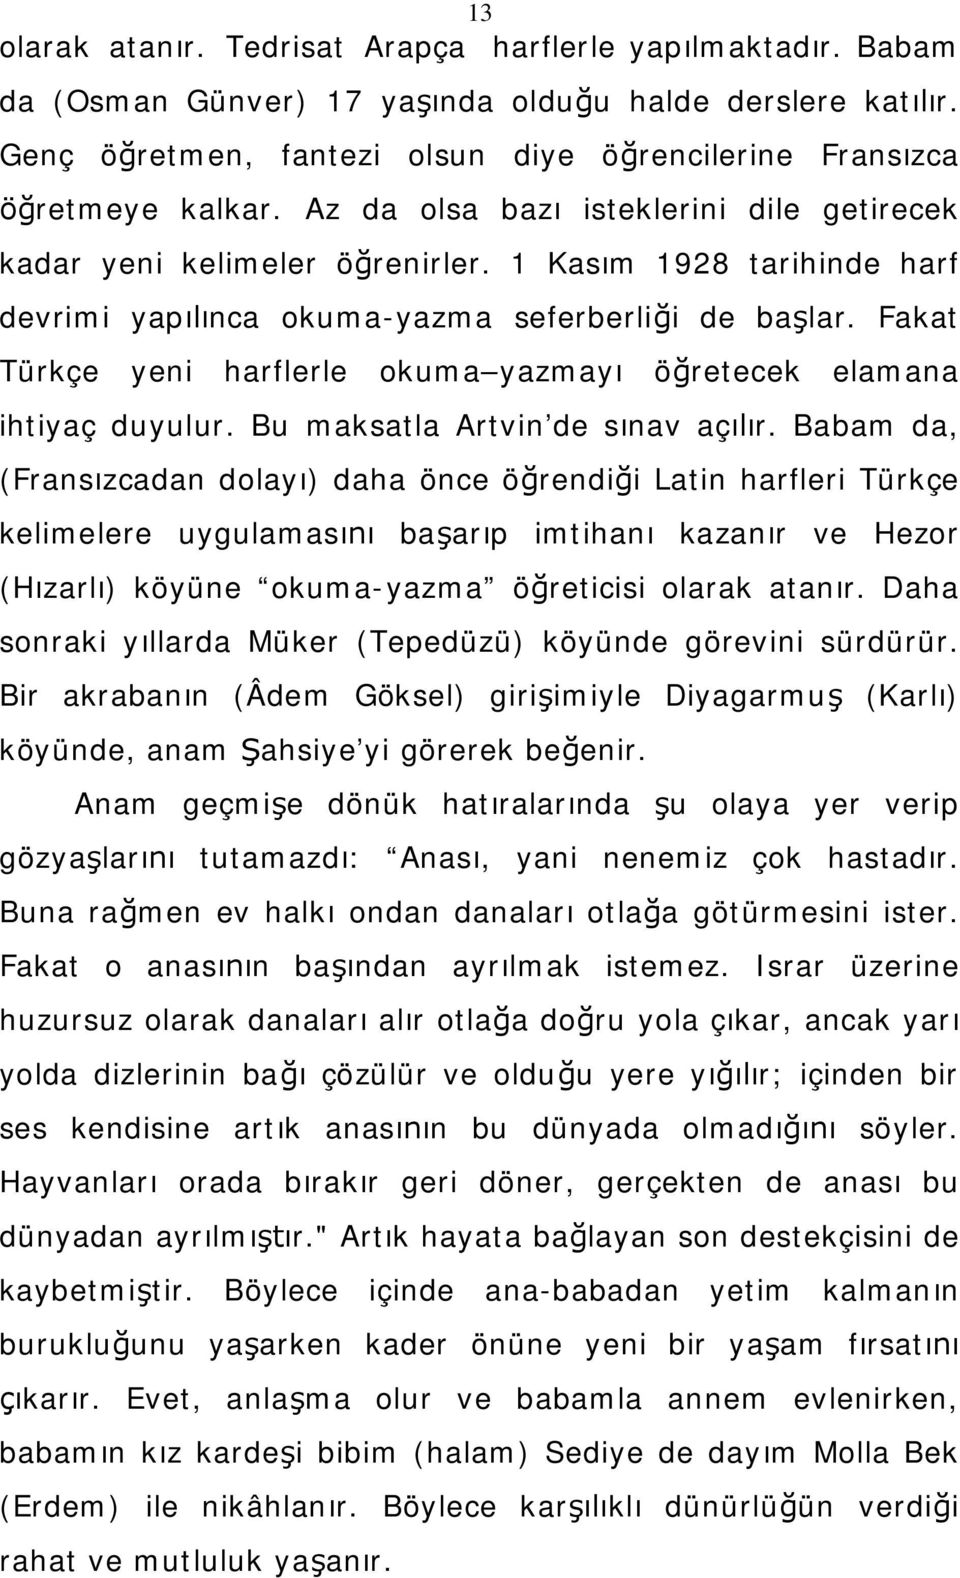 Fakat Türkçe yeni harflerle okuma yazmayı öğretecek elamana ihtiyaç duyulur. Bu maksatla Artvin de sınav açılır.